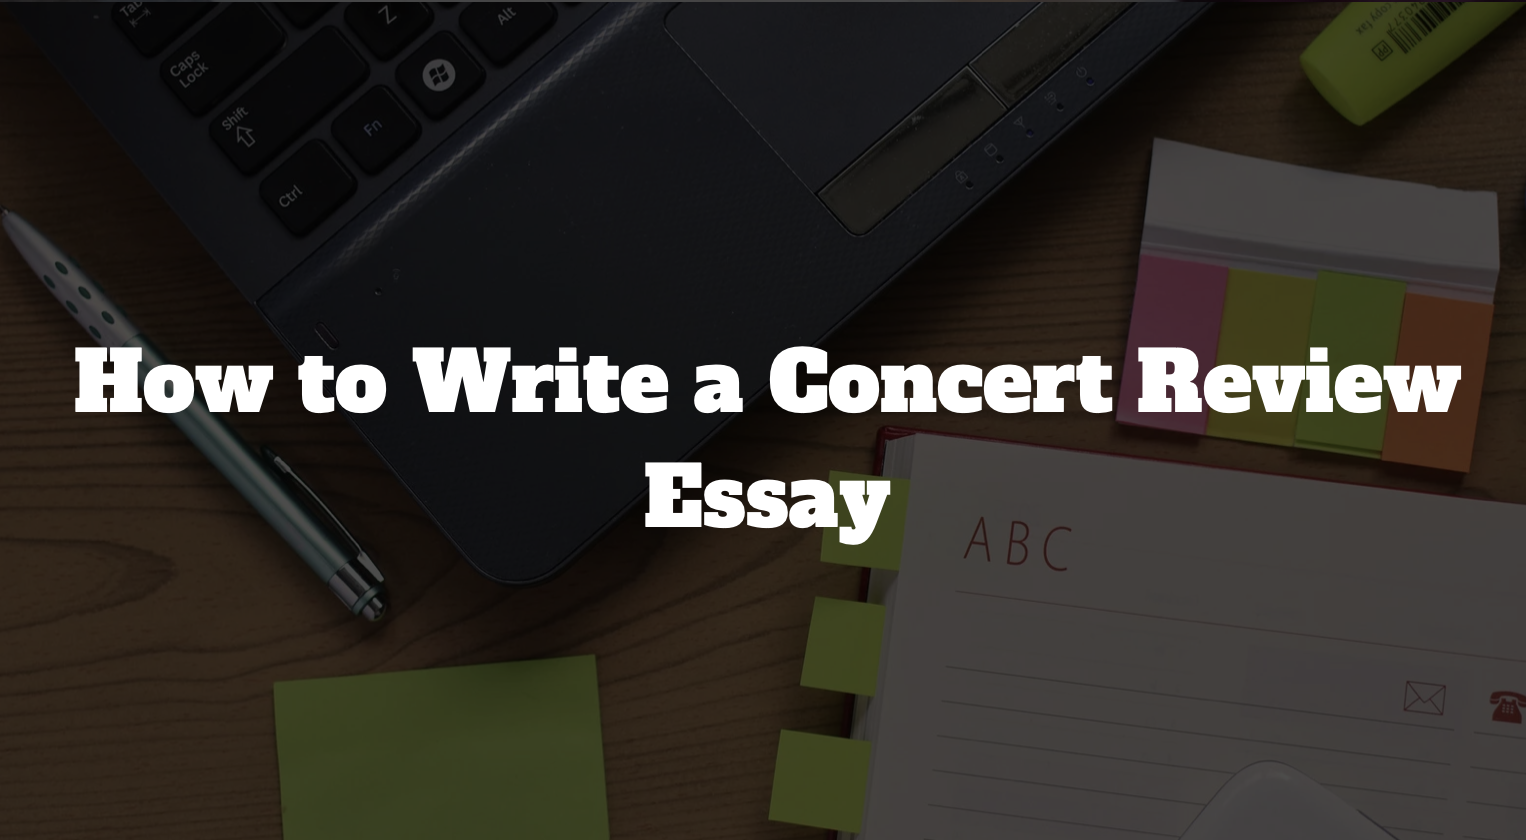 How to Write a Concert Review Essay